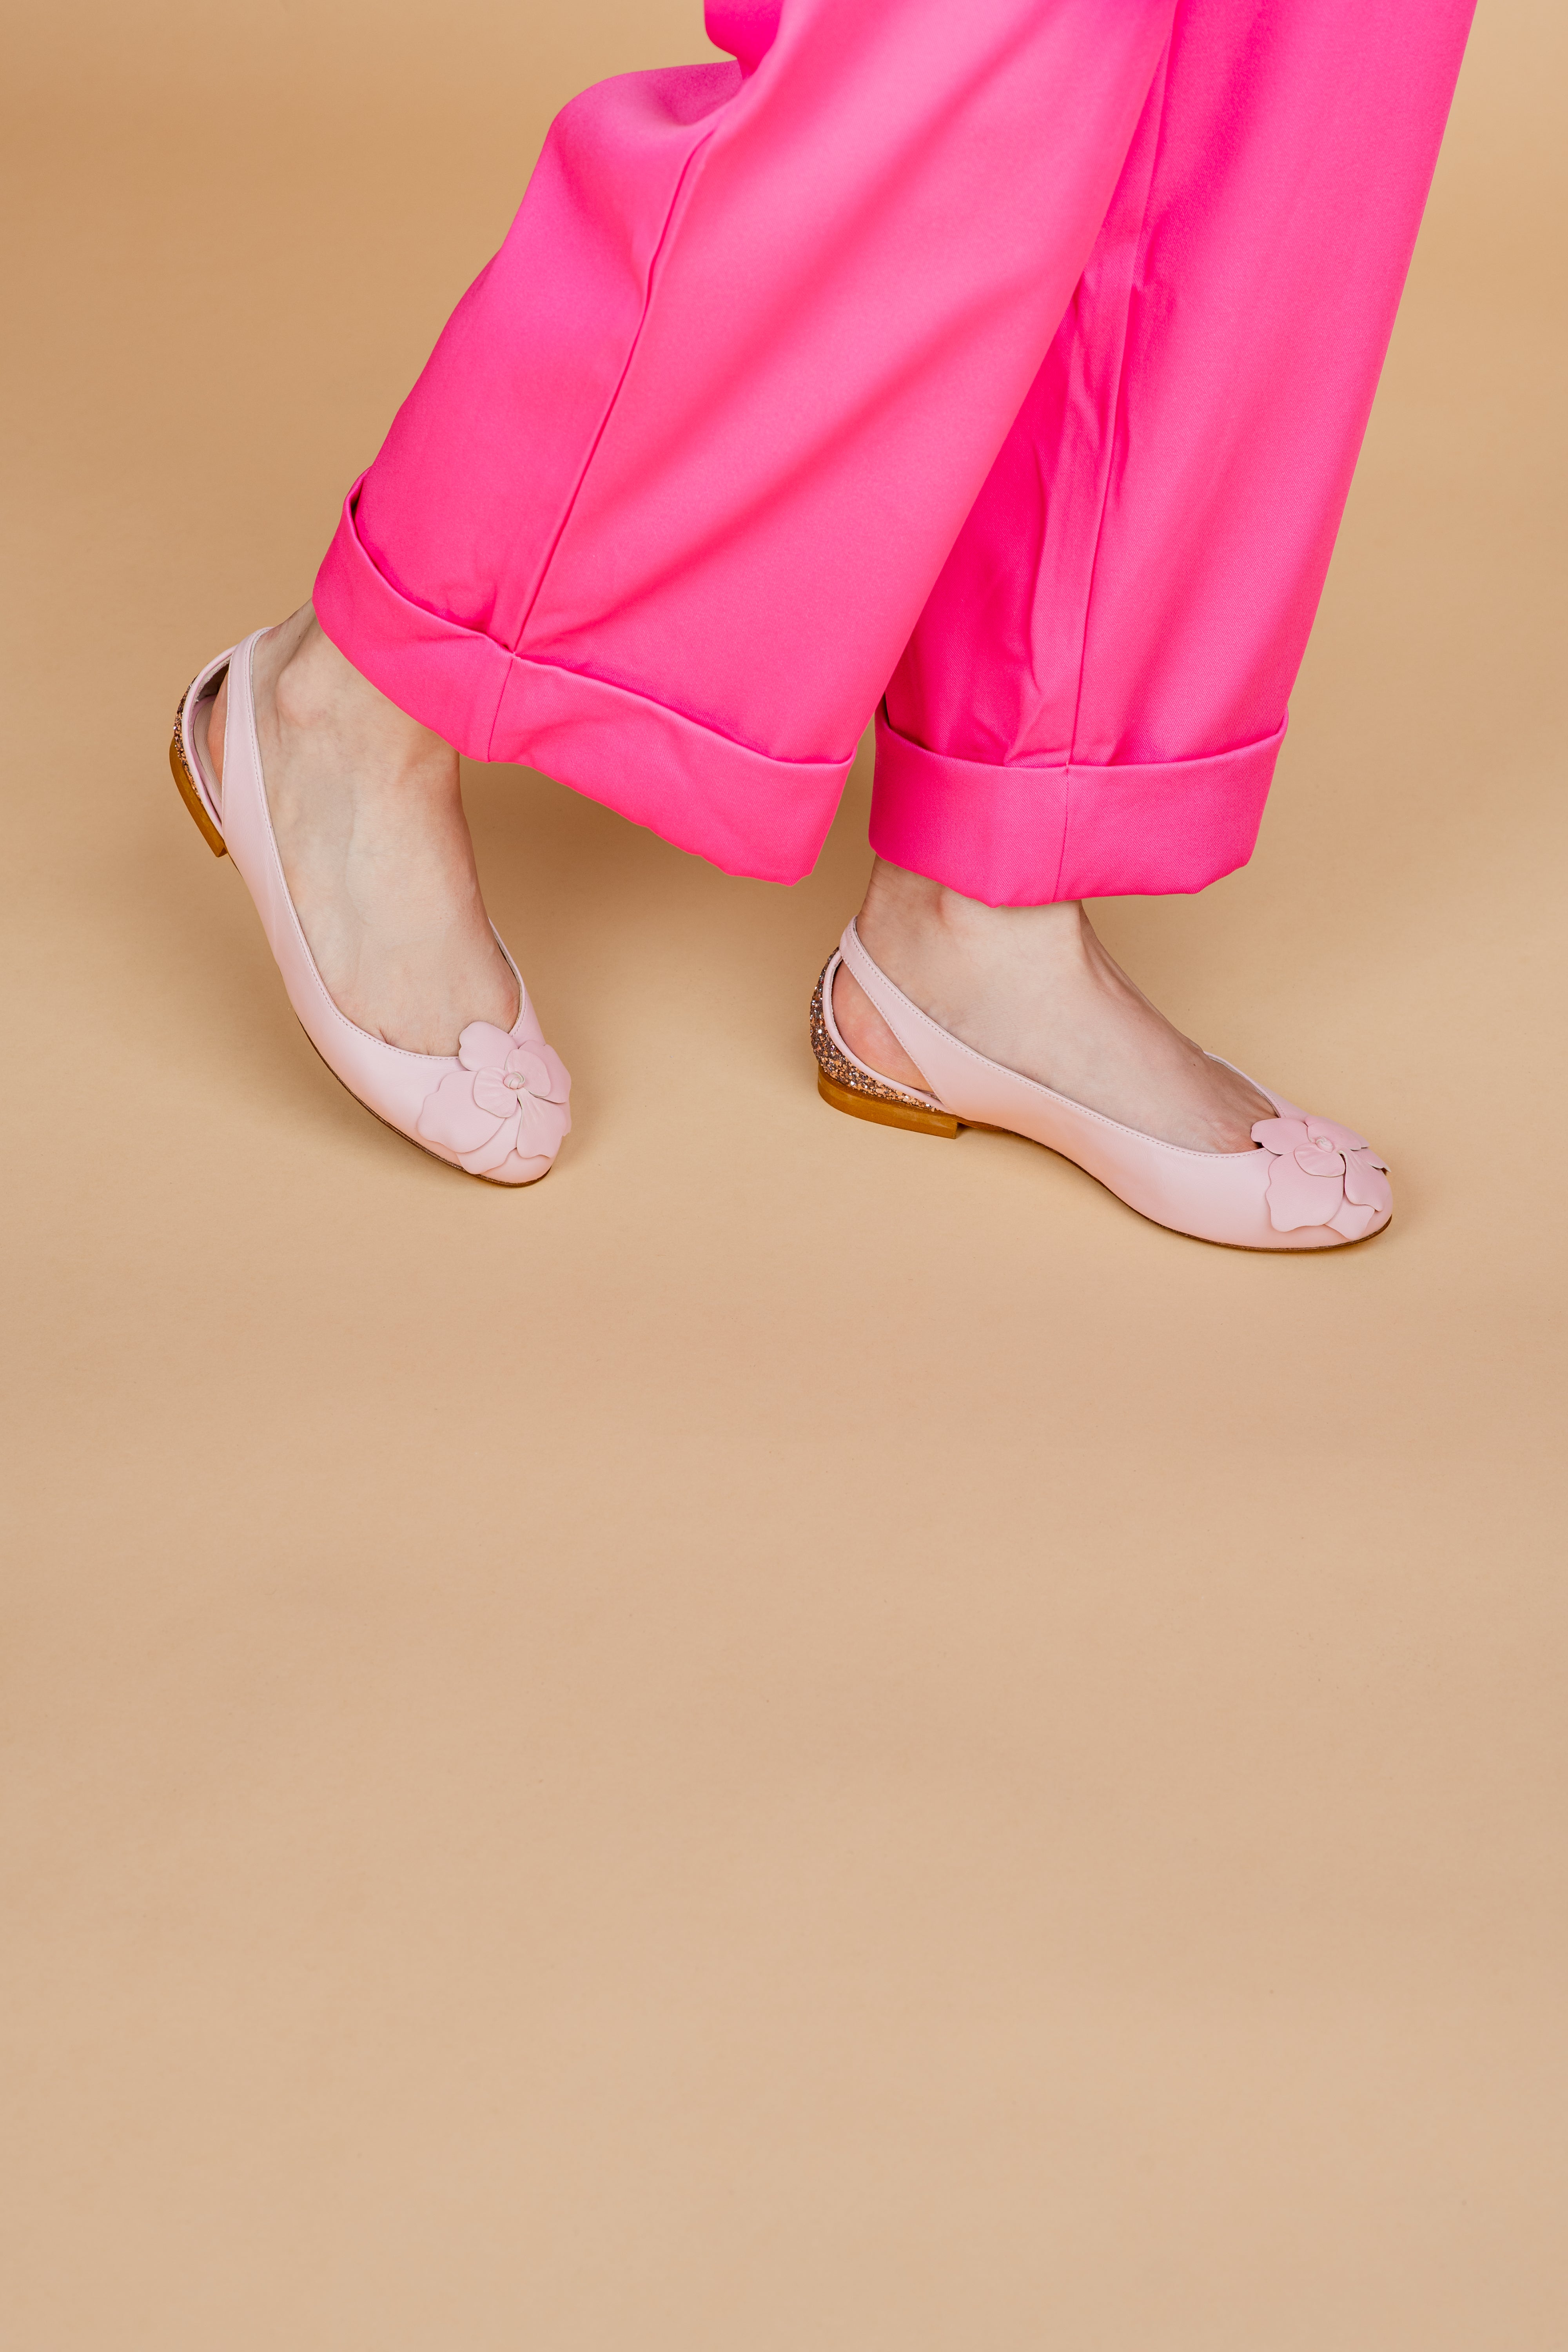 Vanda Ballerina - Kedai Kilang Serbuk Pink